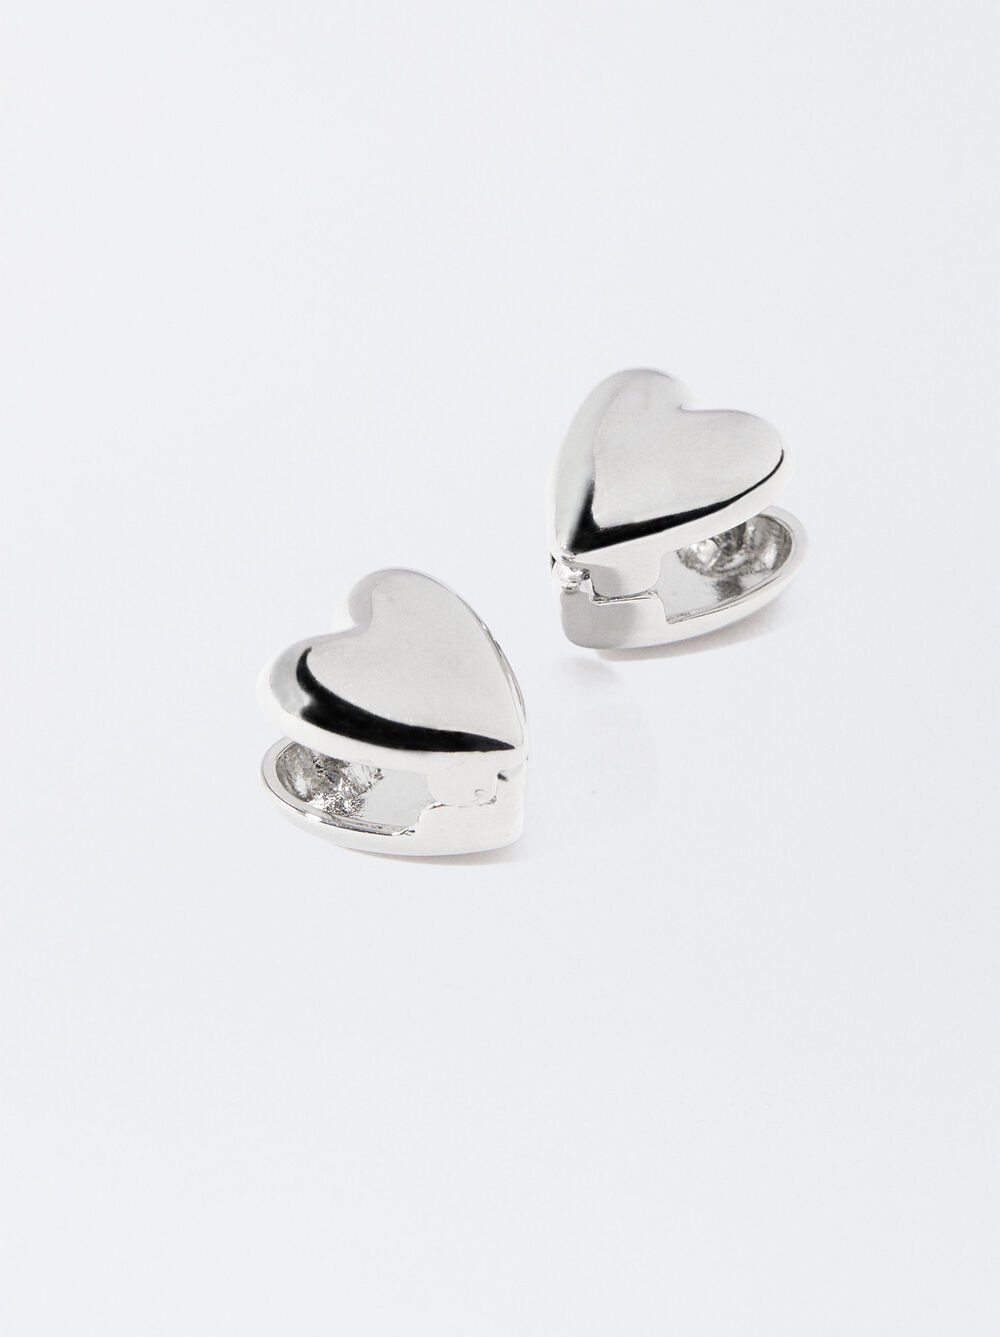 Silver Heart Earrings 